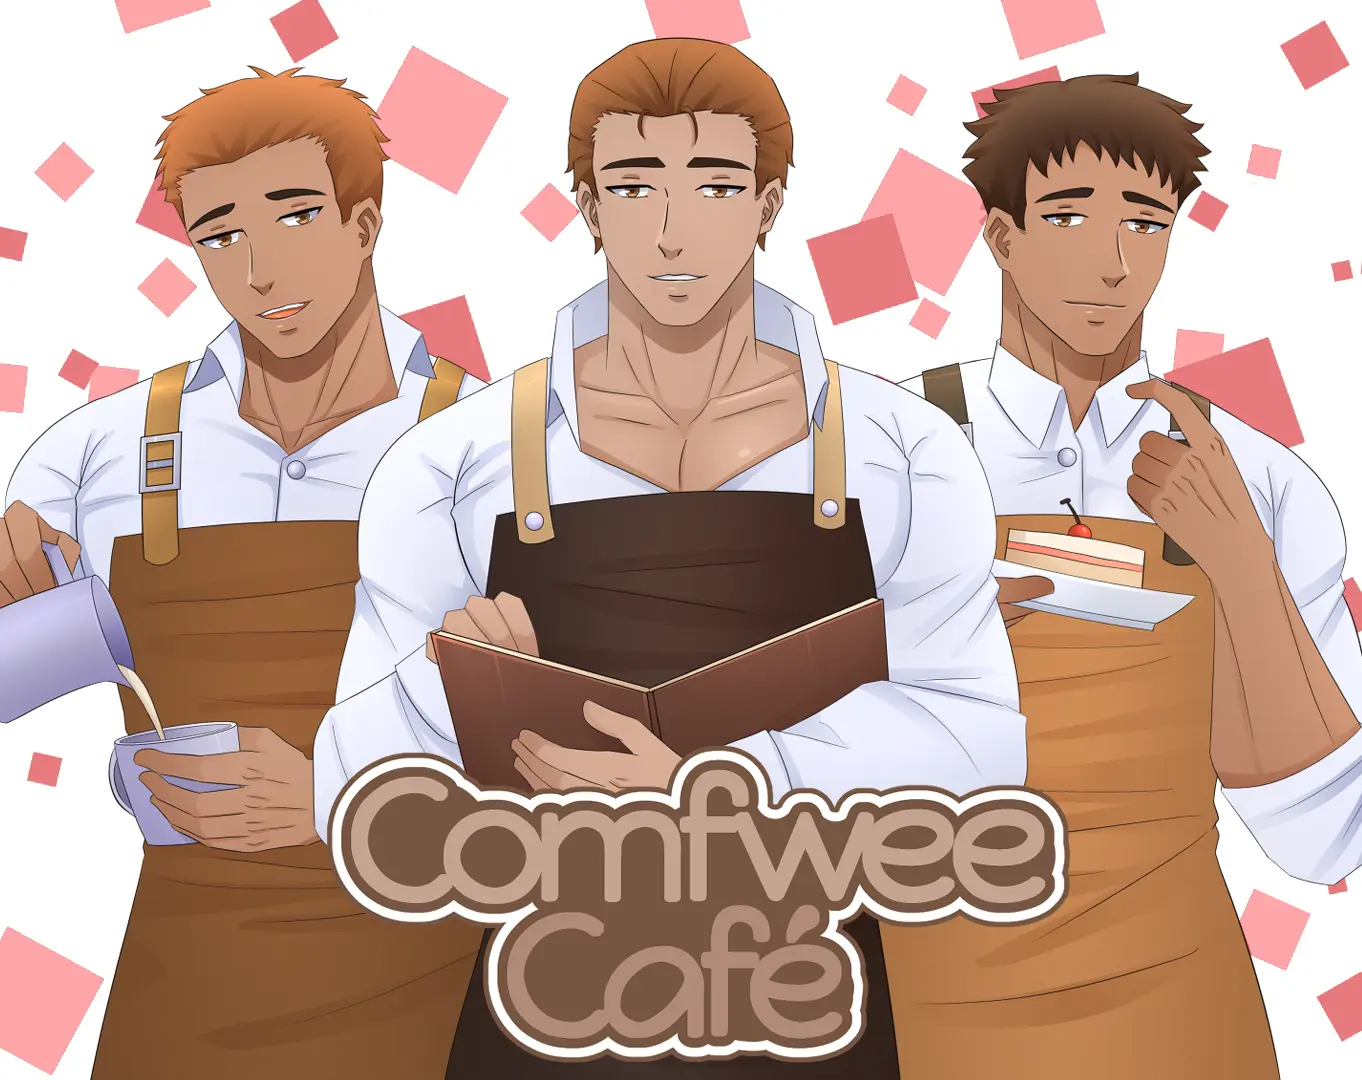 Comfwee Café main image